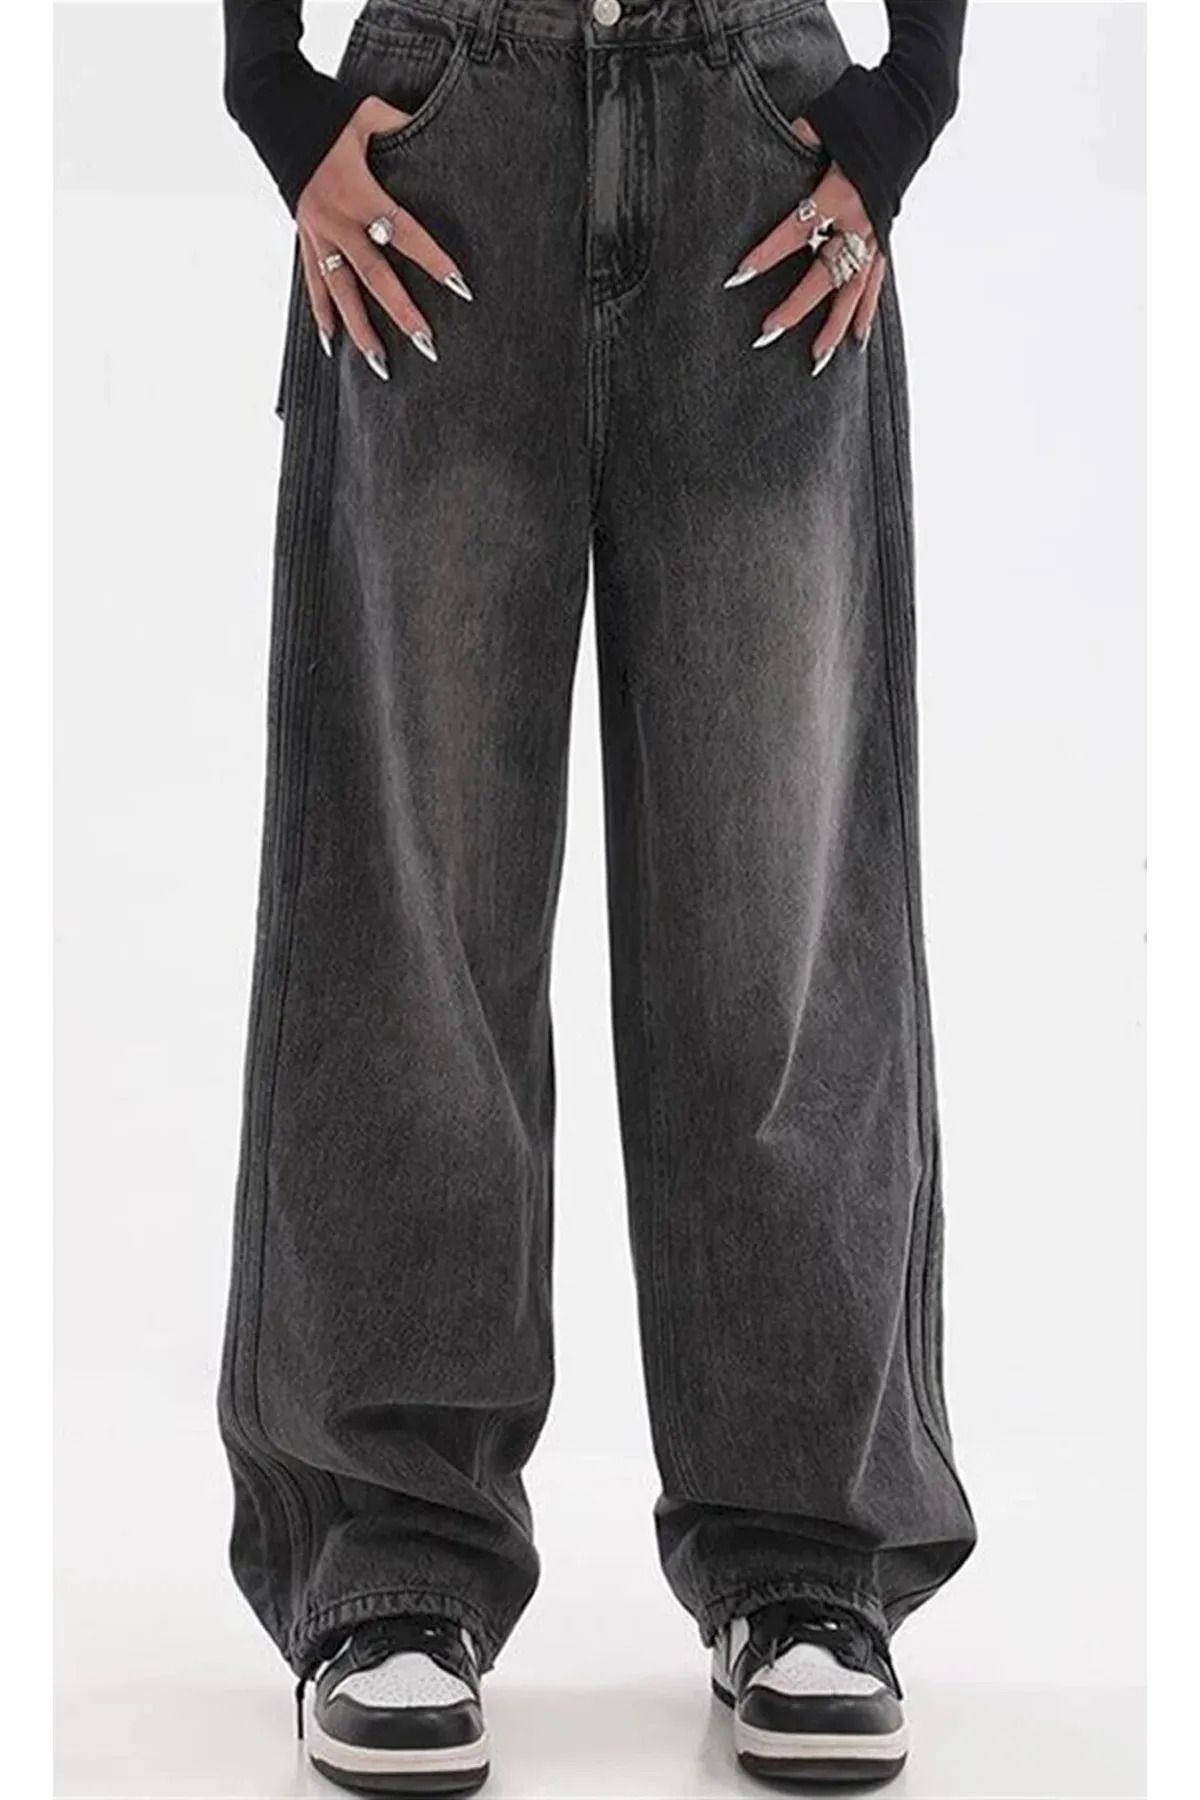 ramcy Pofidi Vintage Siyah Yıkamalı Baggy Jean